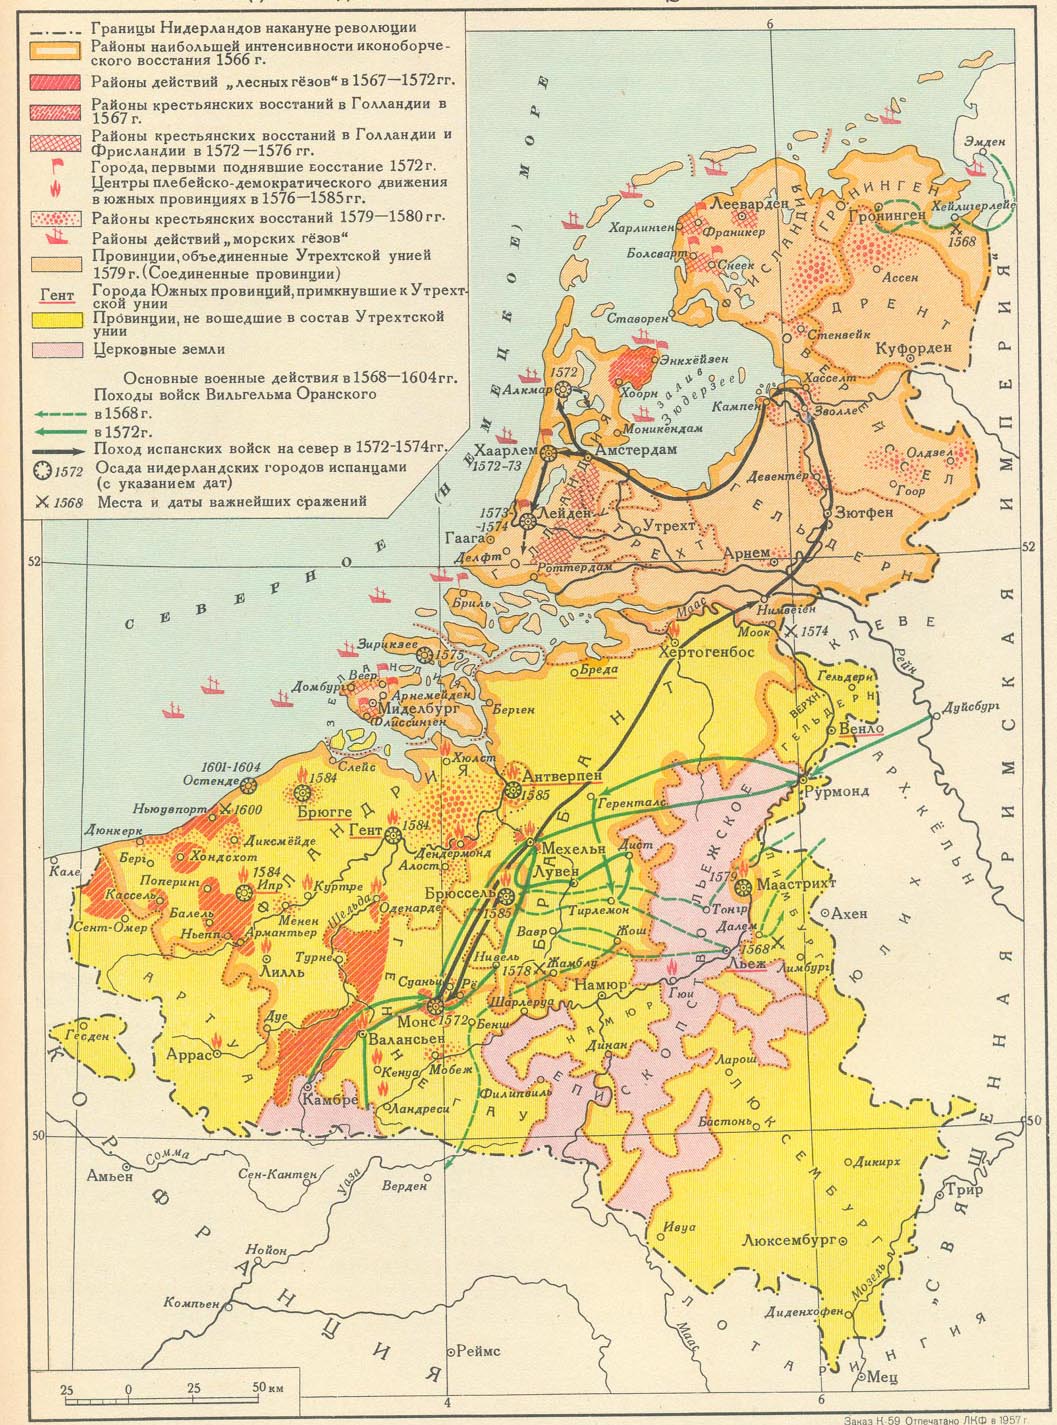 Нидерландская буржуазная революция 1566-1609 карта